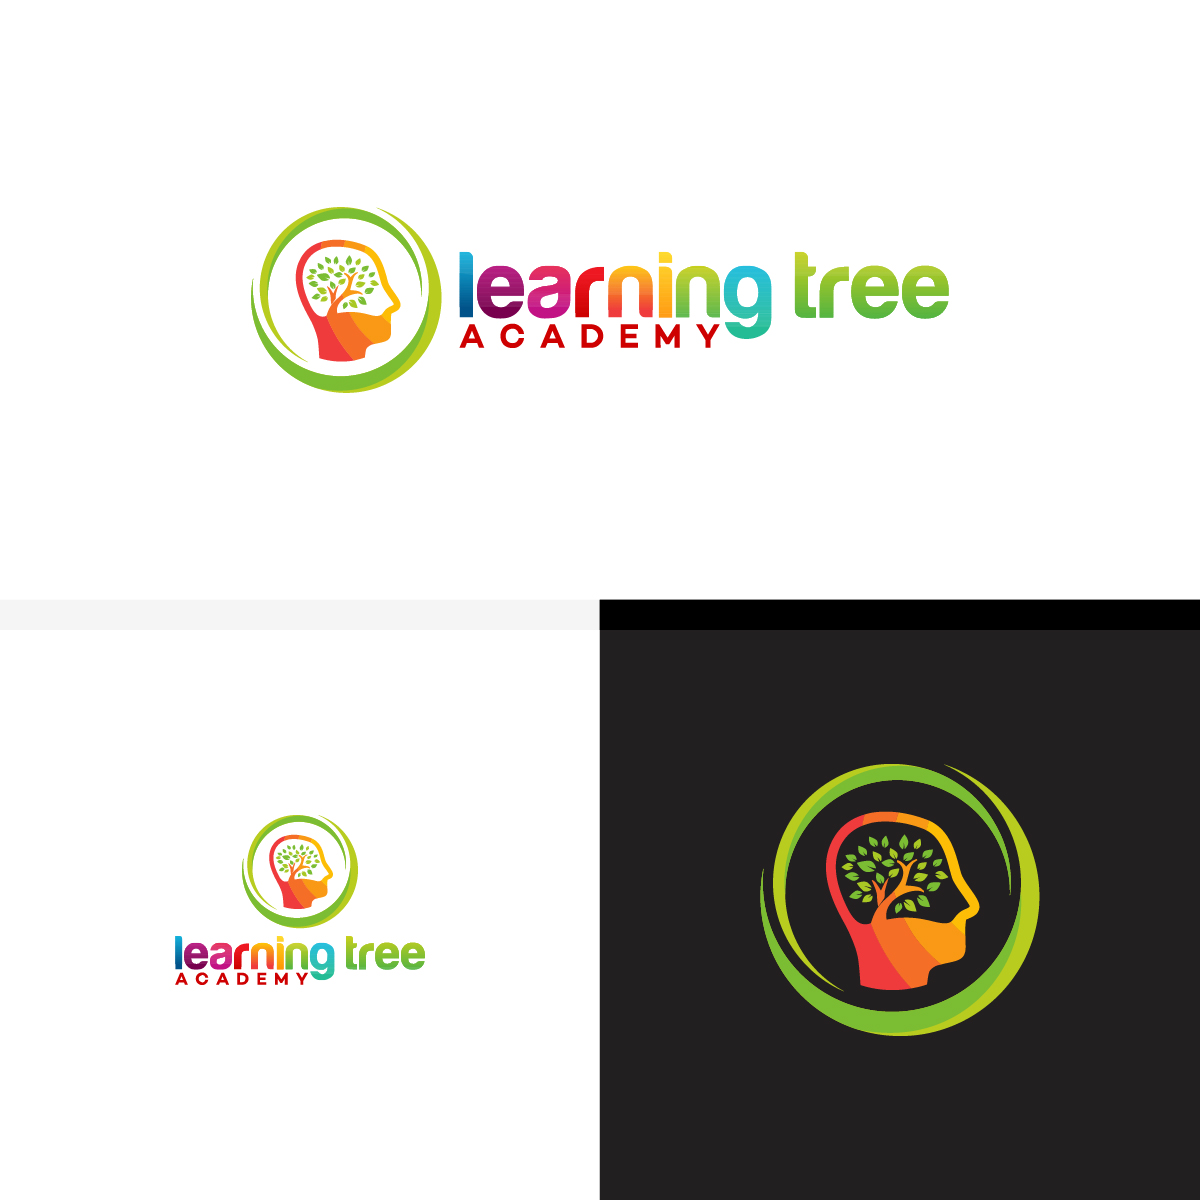 Learning Tree logo for education company